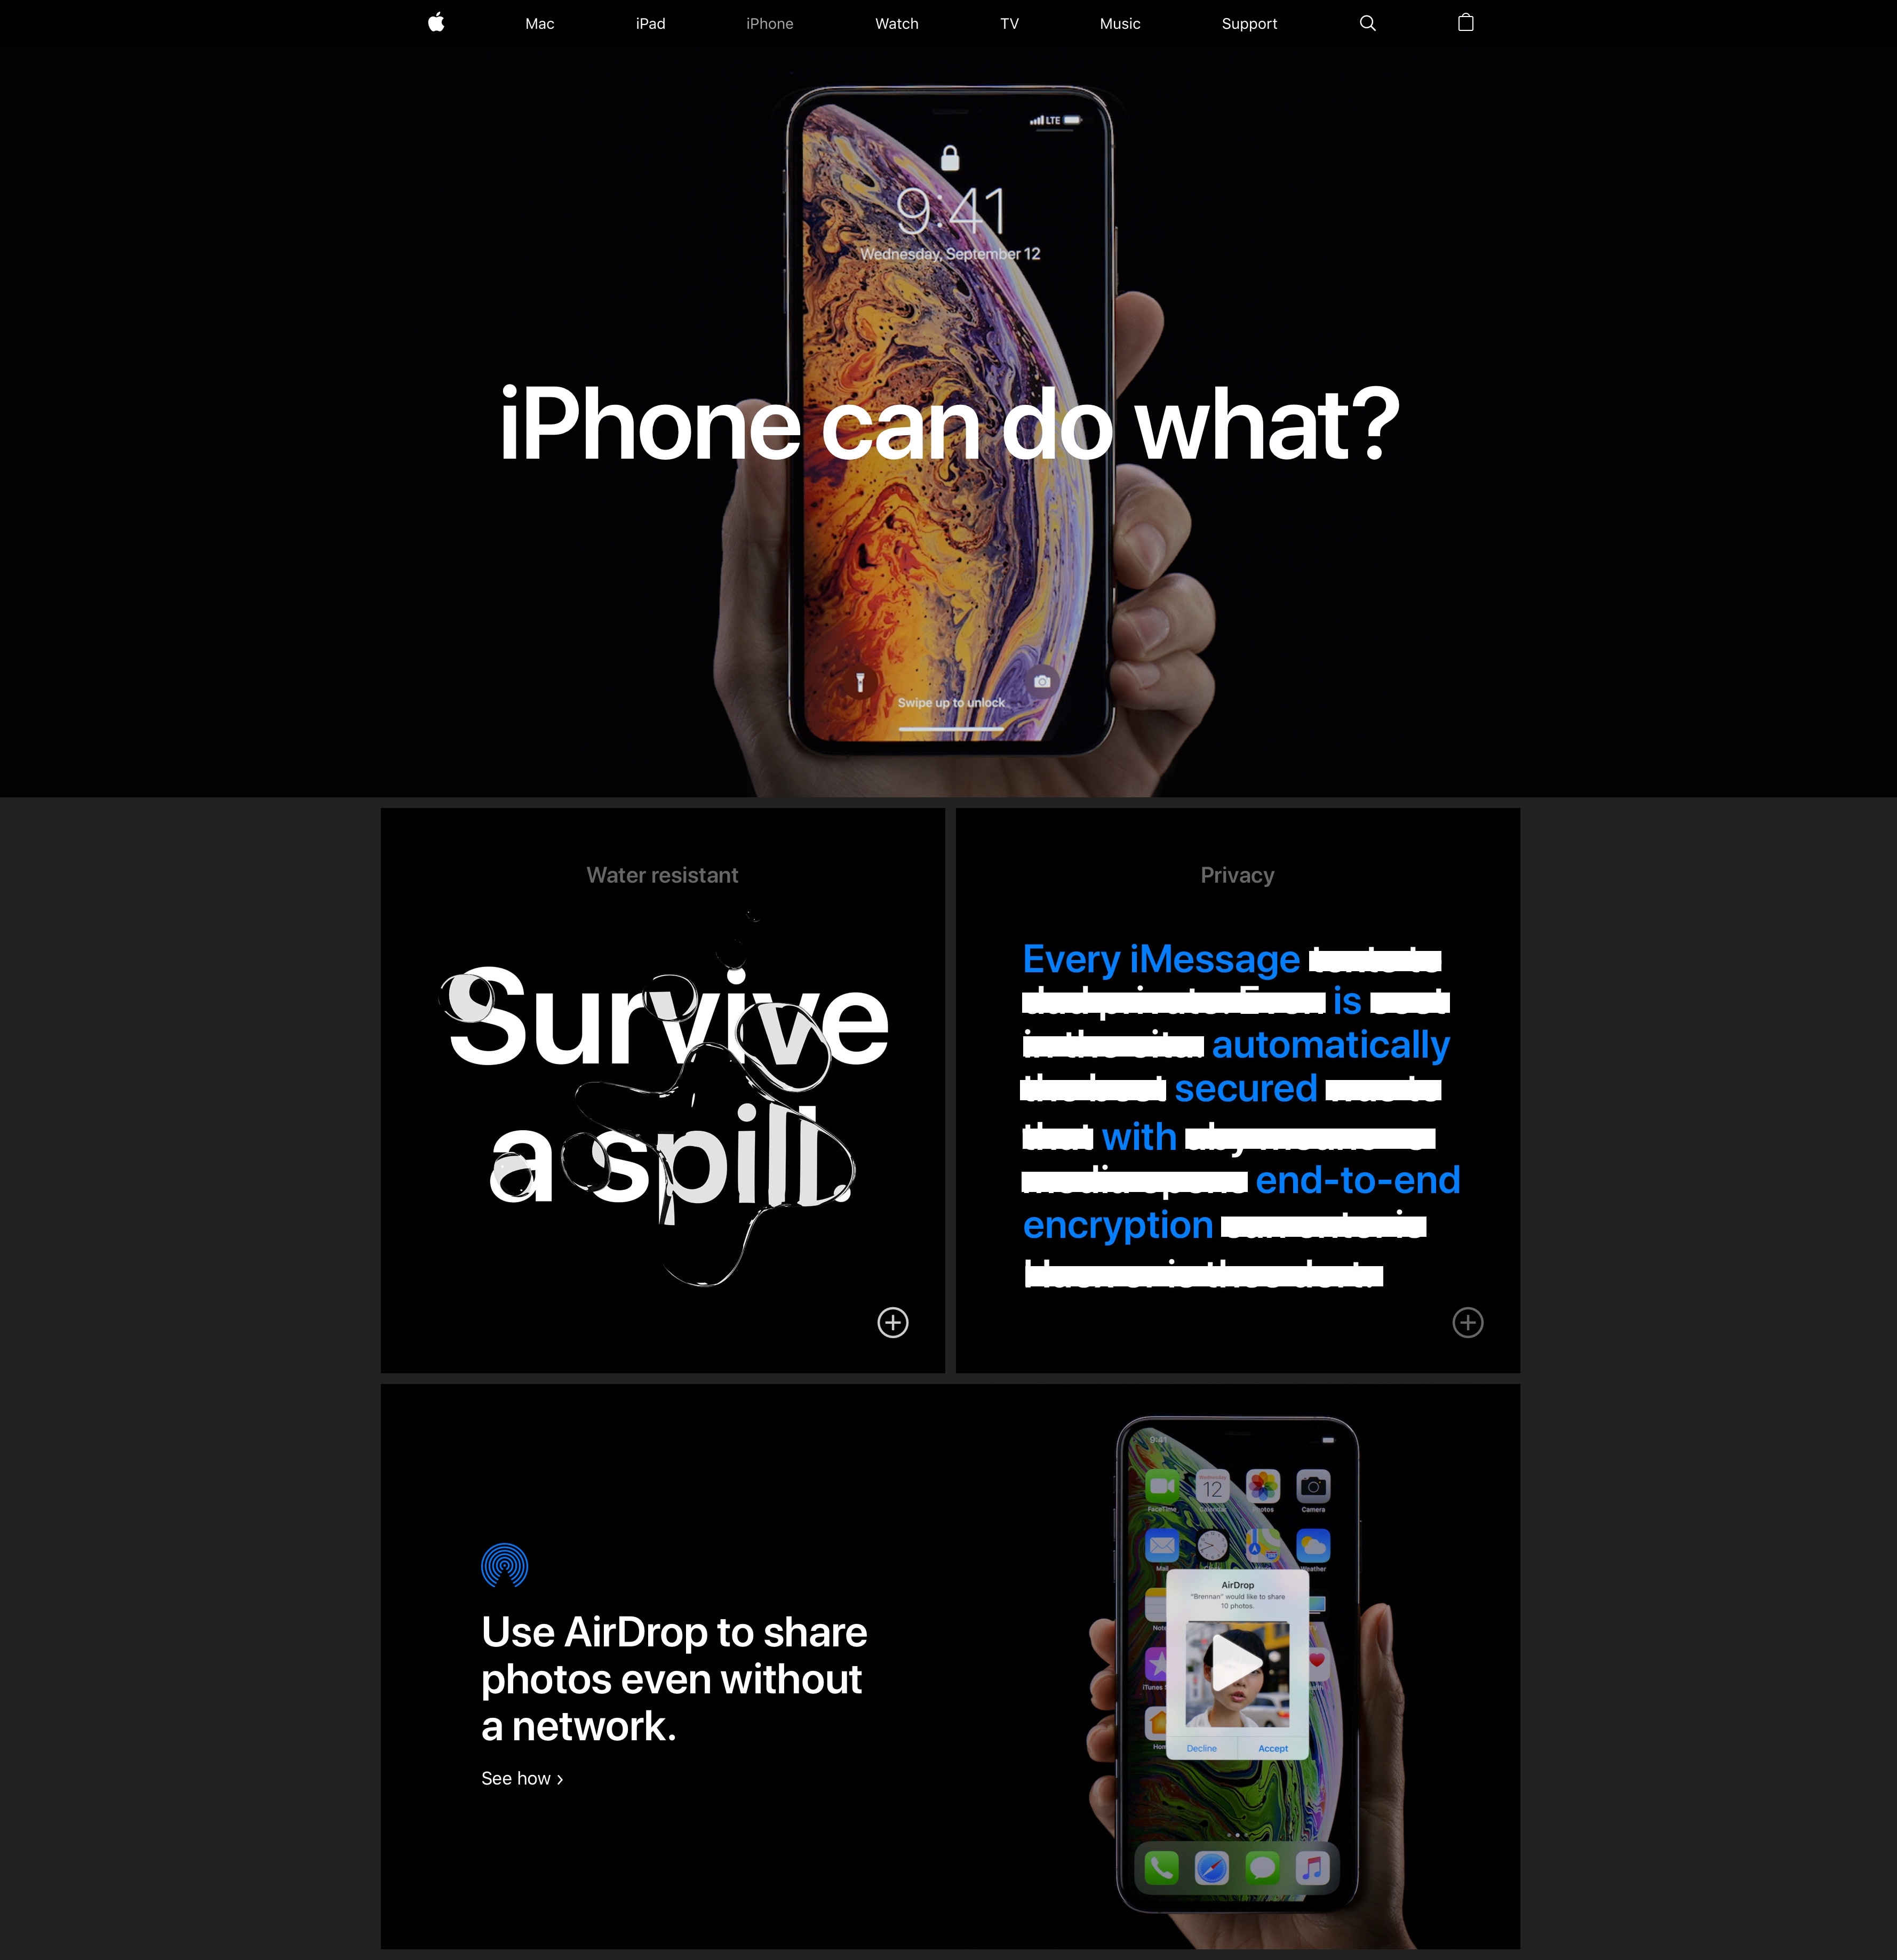 Página da campanha "iPhone can do what?"